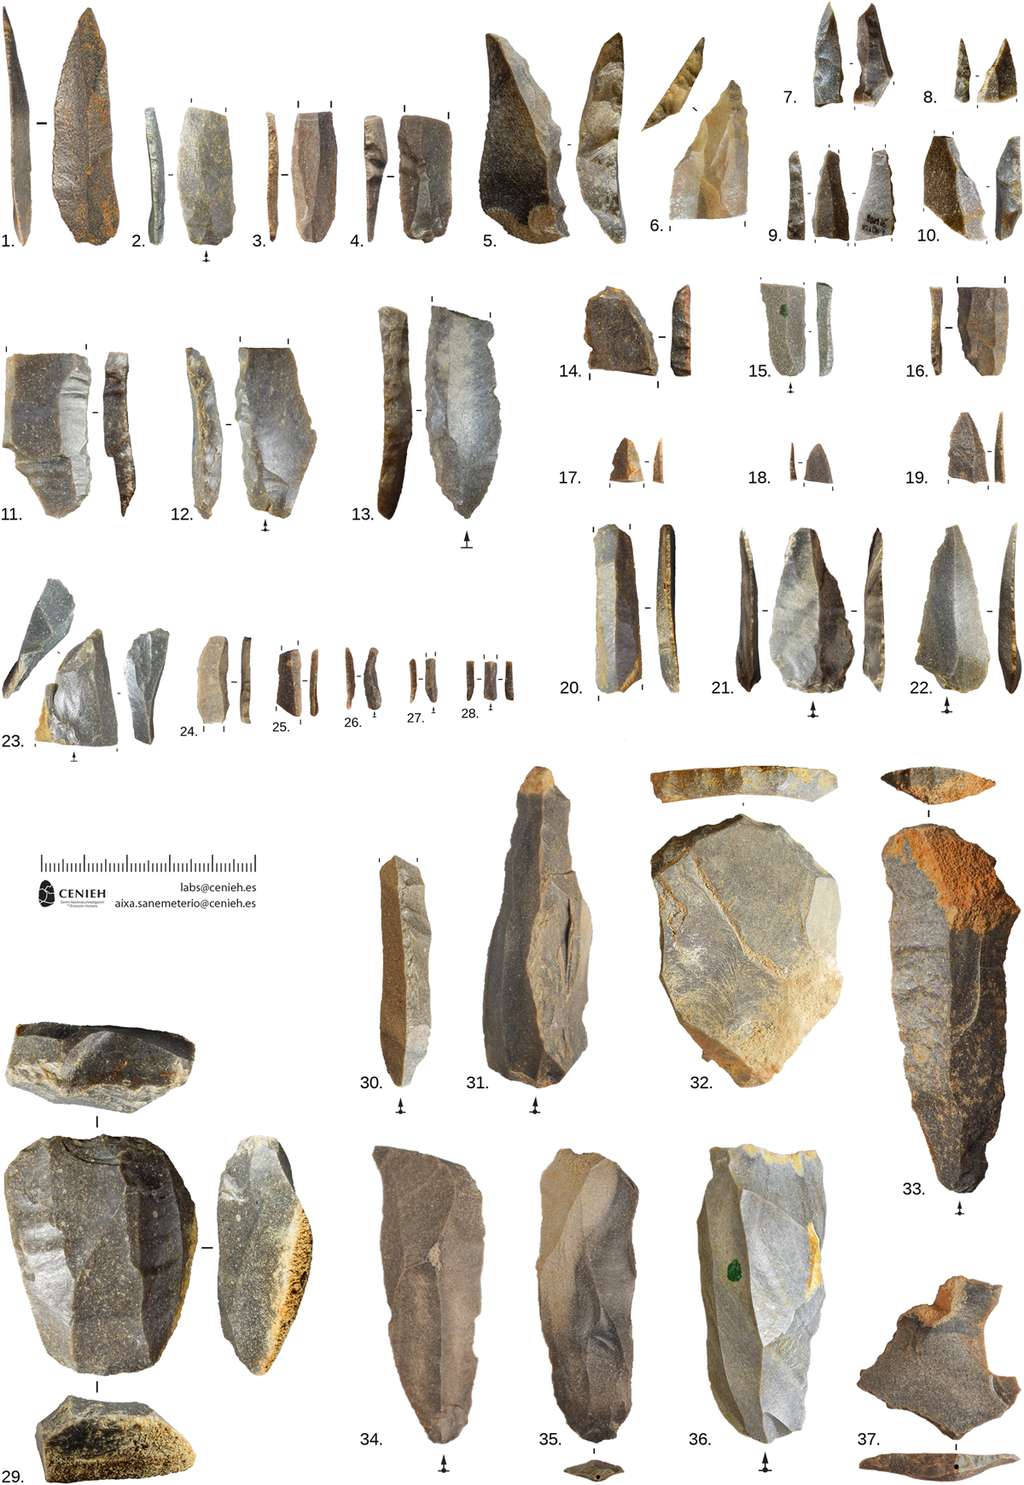 Des restes d'industrie lithique caractéristiques du Châtelperronien ont été trouvés à Aranbaltza II. © Rios-Garaizar et al, 2022